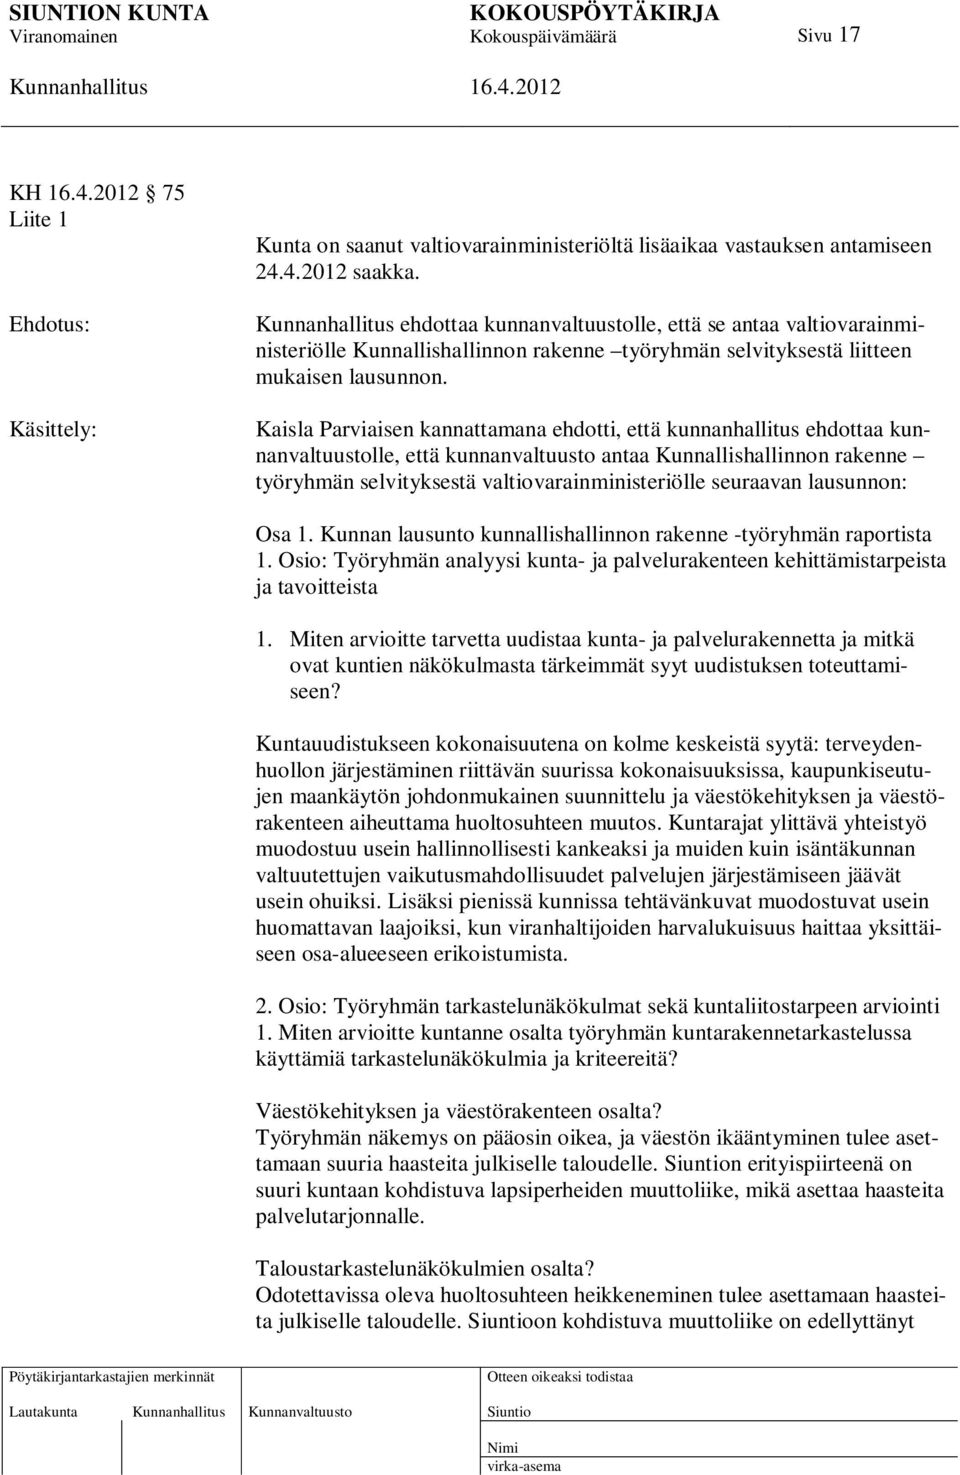 Kaisla Parviaisen kannattamana ehdotti, että kunnanhallitus ehdottaa kunnanvaltuustolle, että kunnanvaltuusto antaa Kunnallishallinnon rakenne työryhmän selvityksestä valtiovarainministeriölle